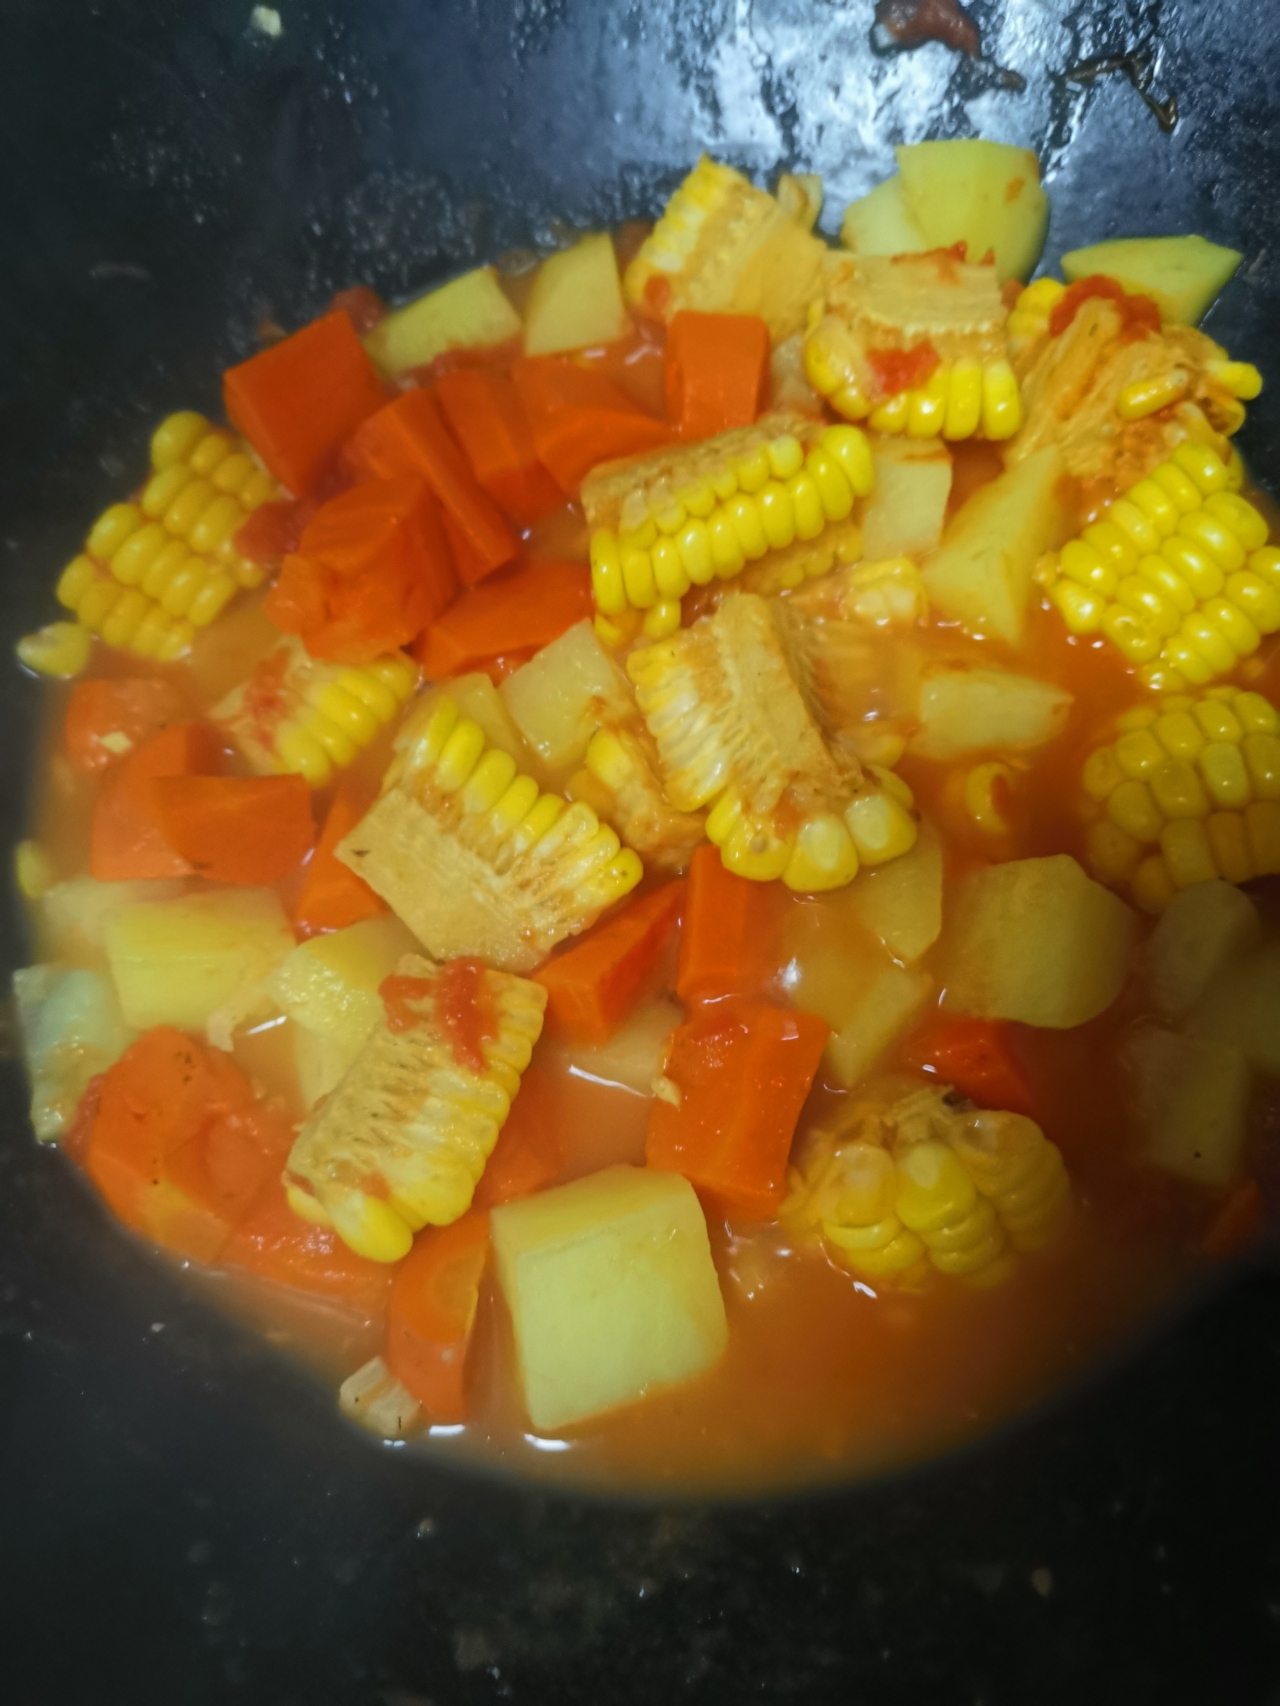 土豆胡萝卜玉米养生汤